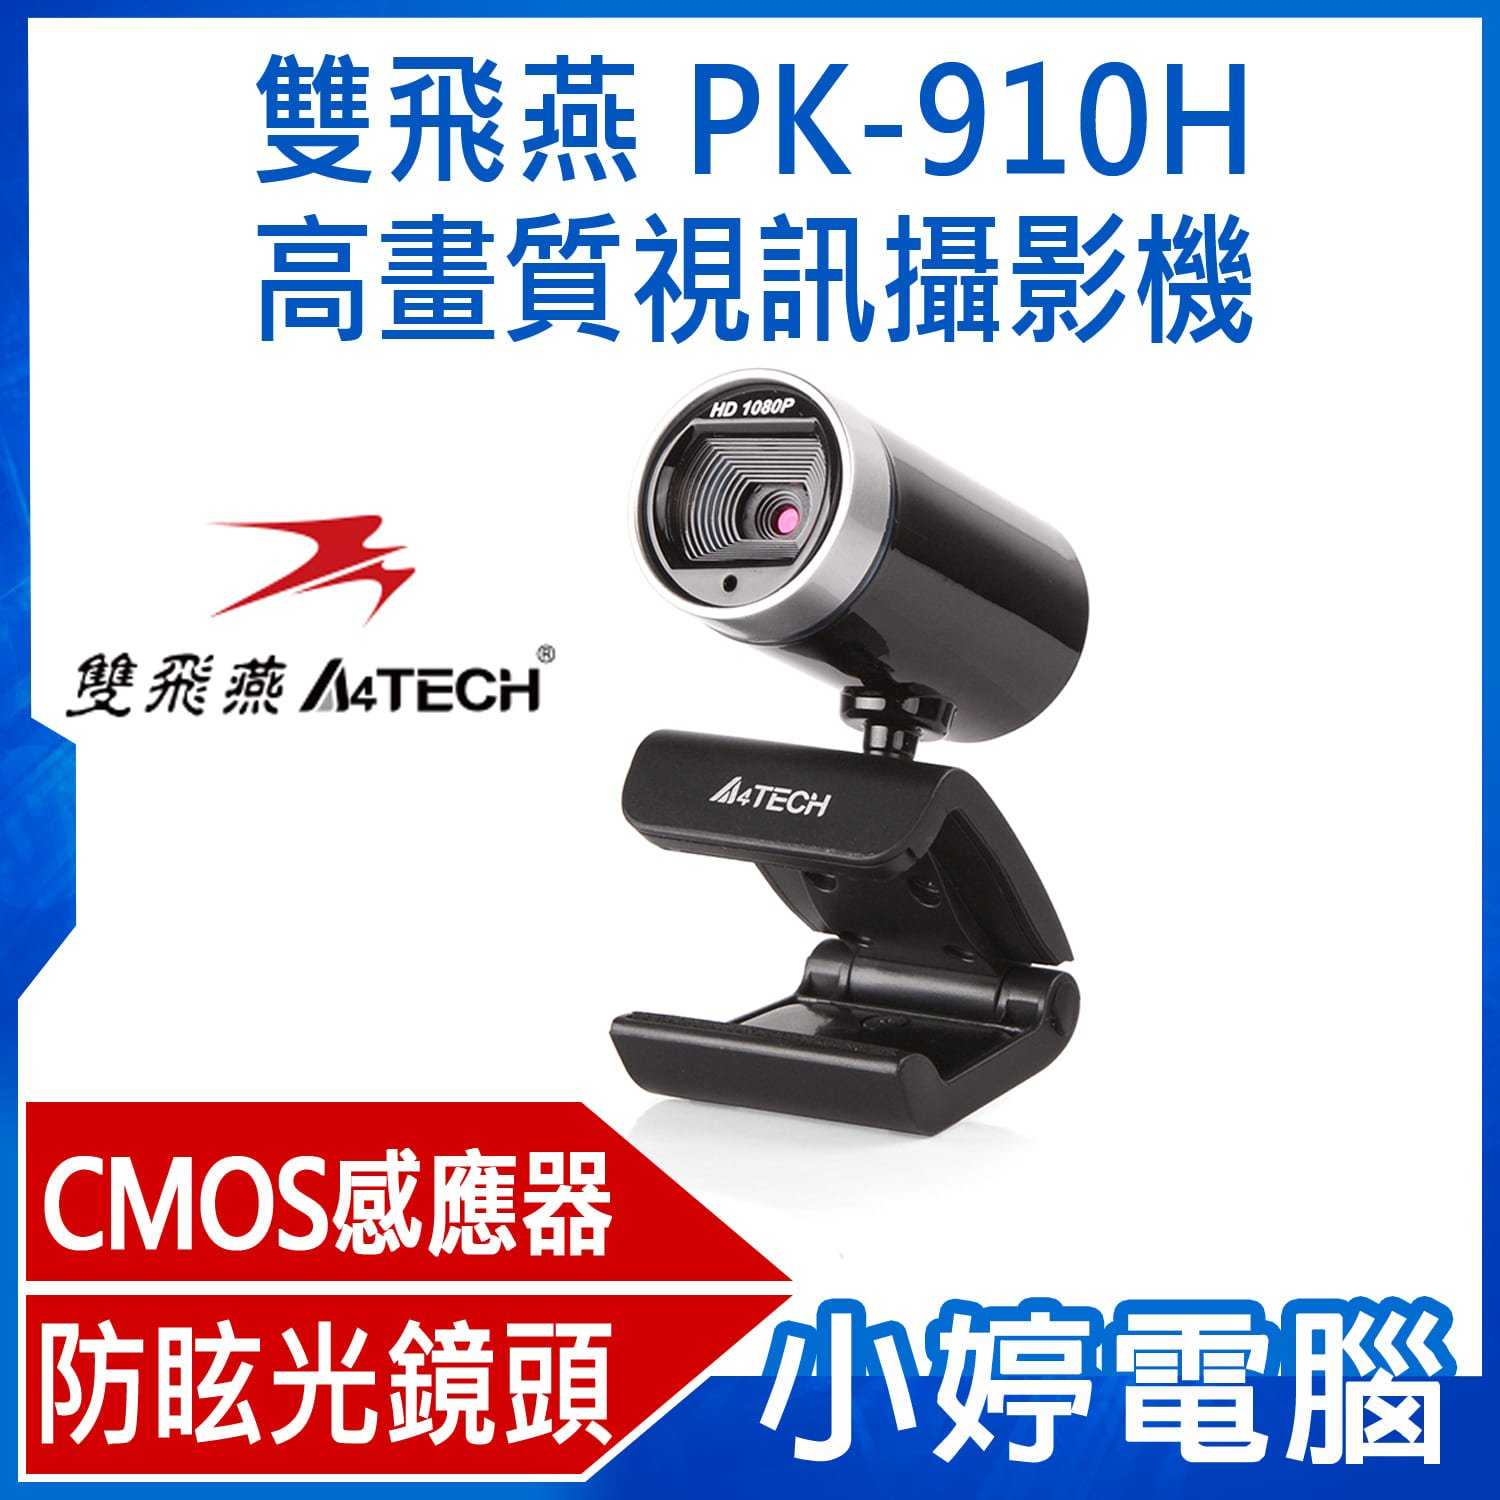 【小婷電腦】A4TECH 雙飛燕 PK-910H 1080P高畫質視訊攝影機 遠端教學 視訊會議